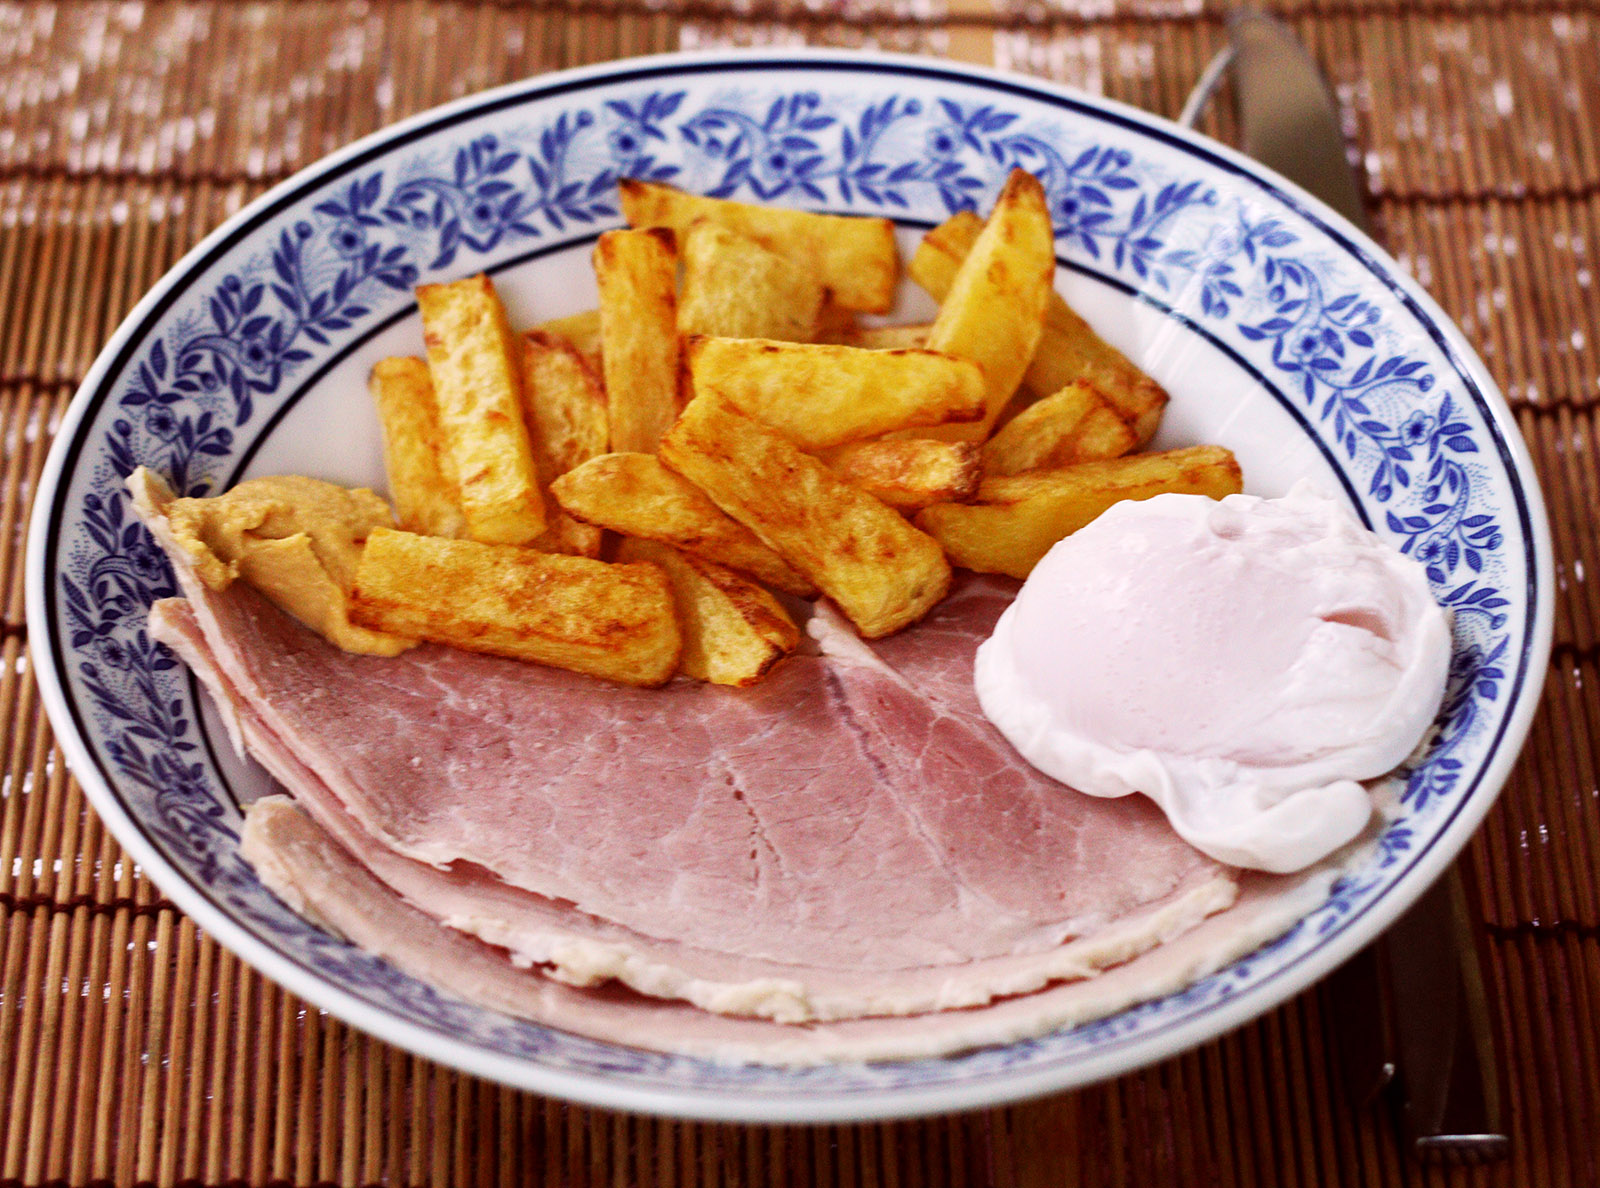 Ham, egg and chips 1 s.jpg